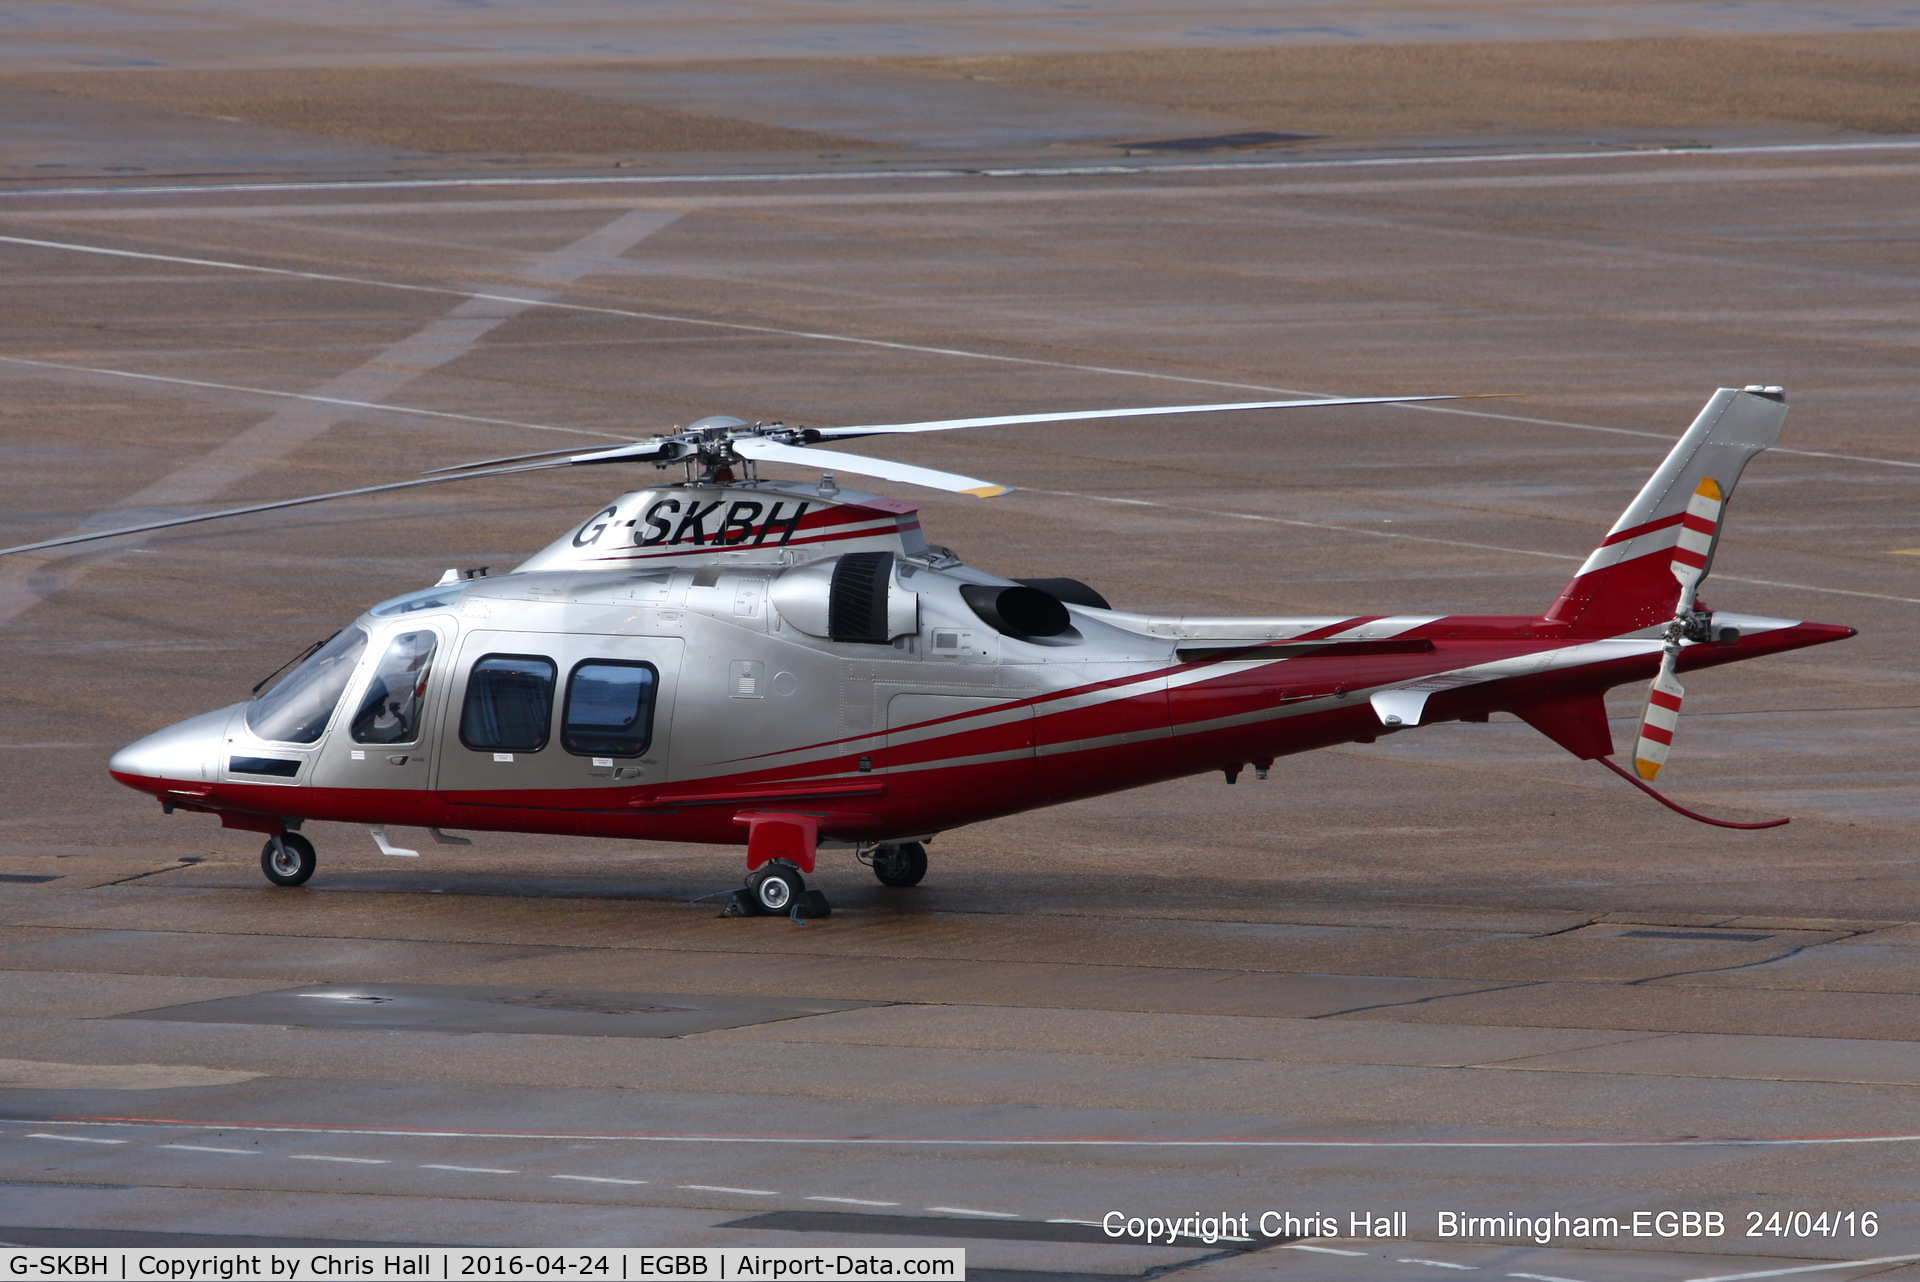 G-SKBH, 2010 Agusta AW-109SP Grand New C/N 22216, Apollo Air Services